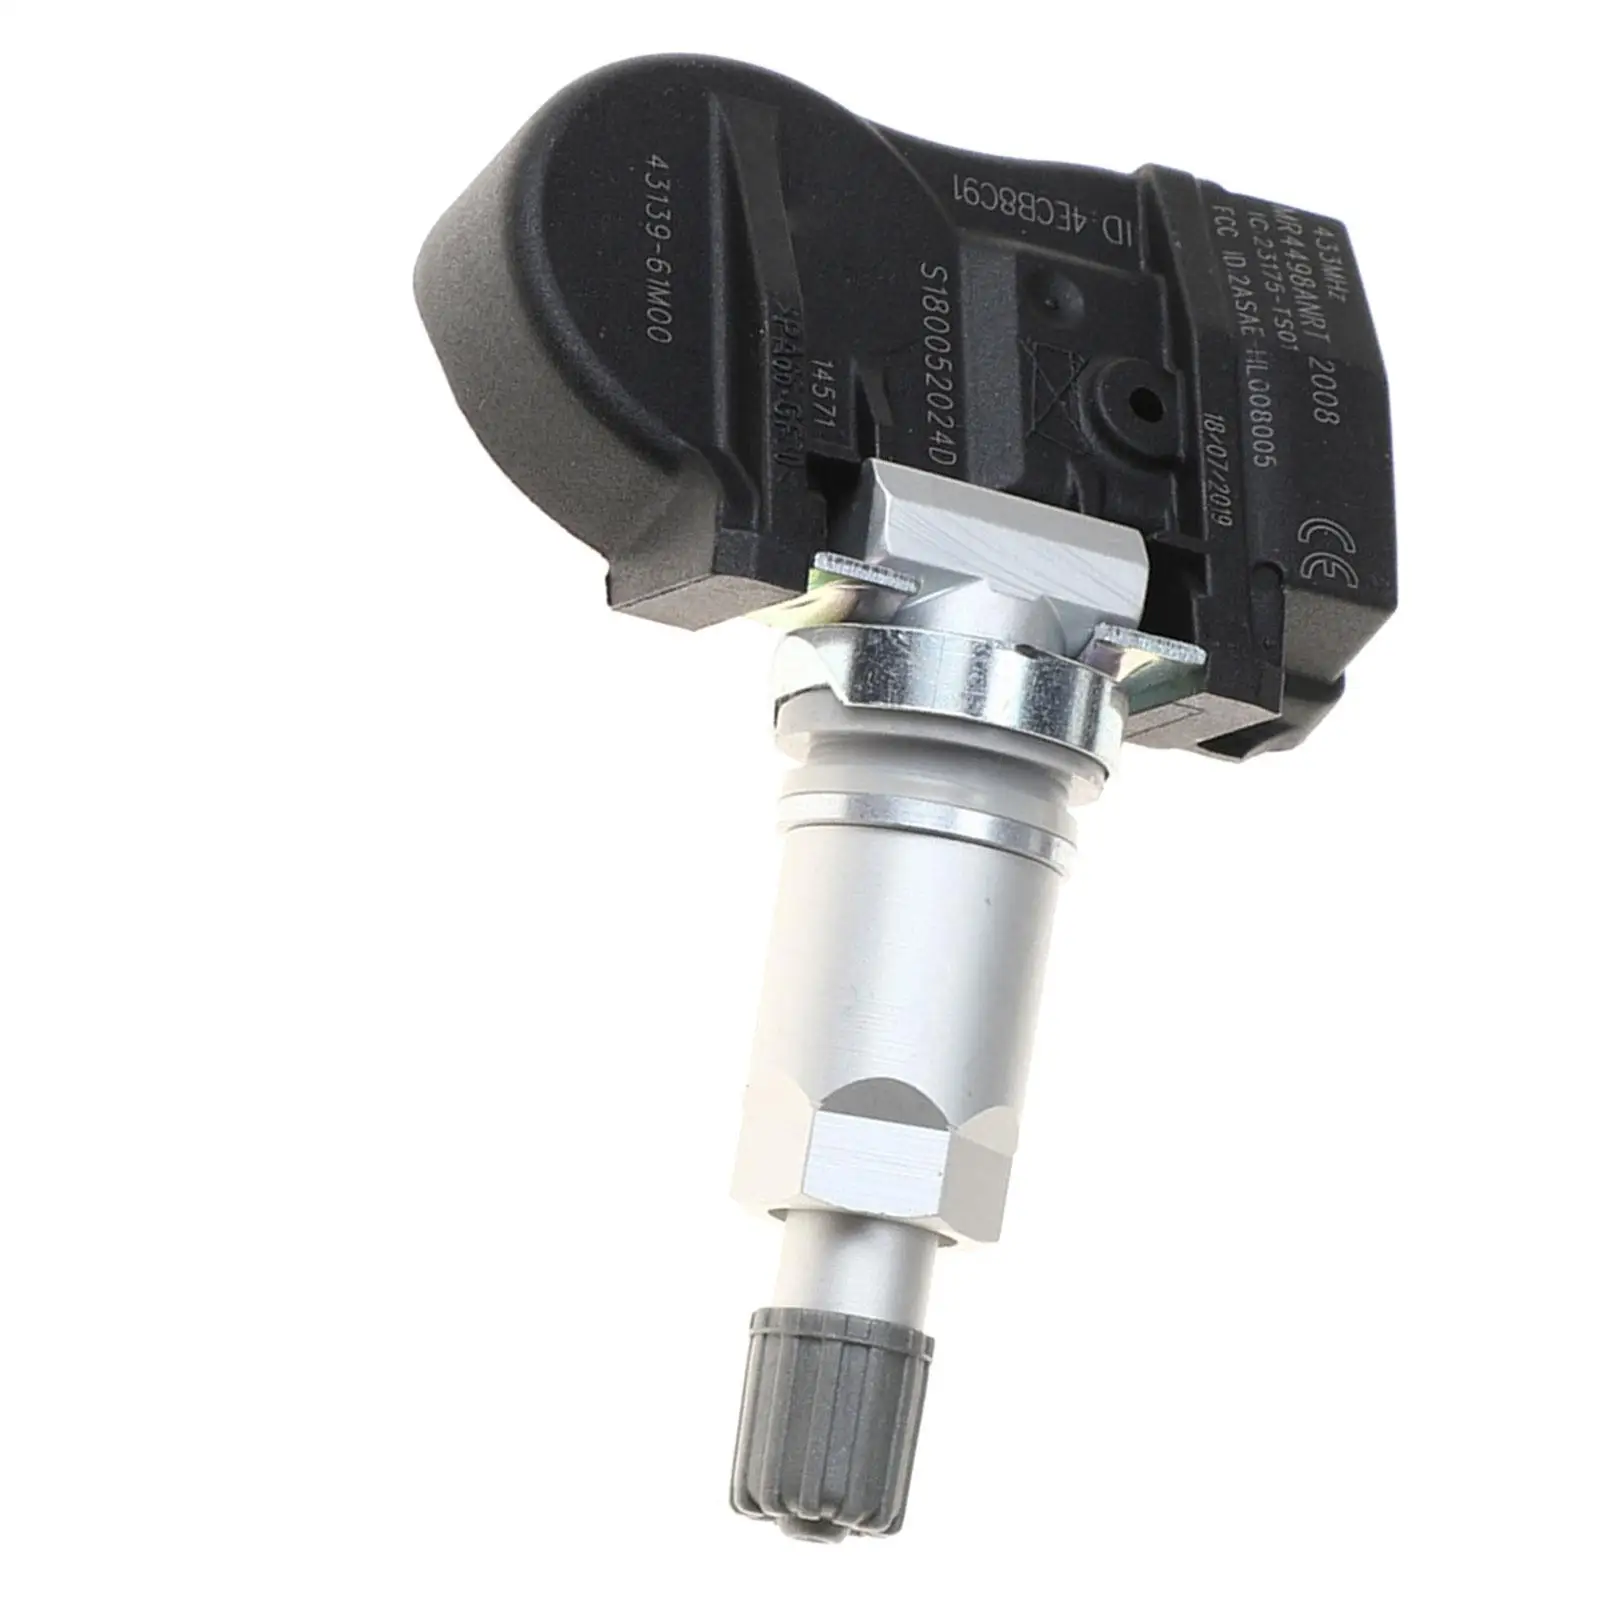 Tire Pressure Monitor Sensor Spare Parts for Suzuki Wear Resistance